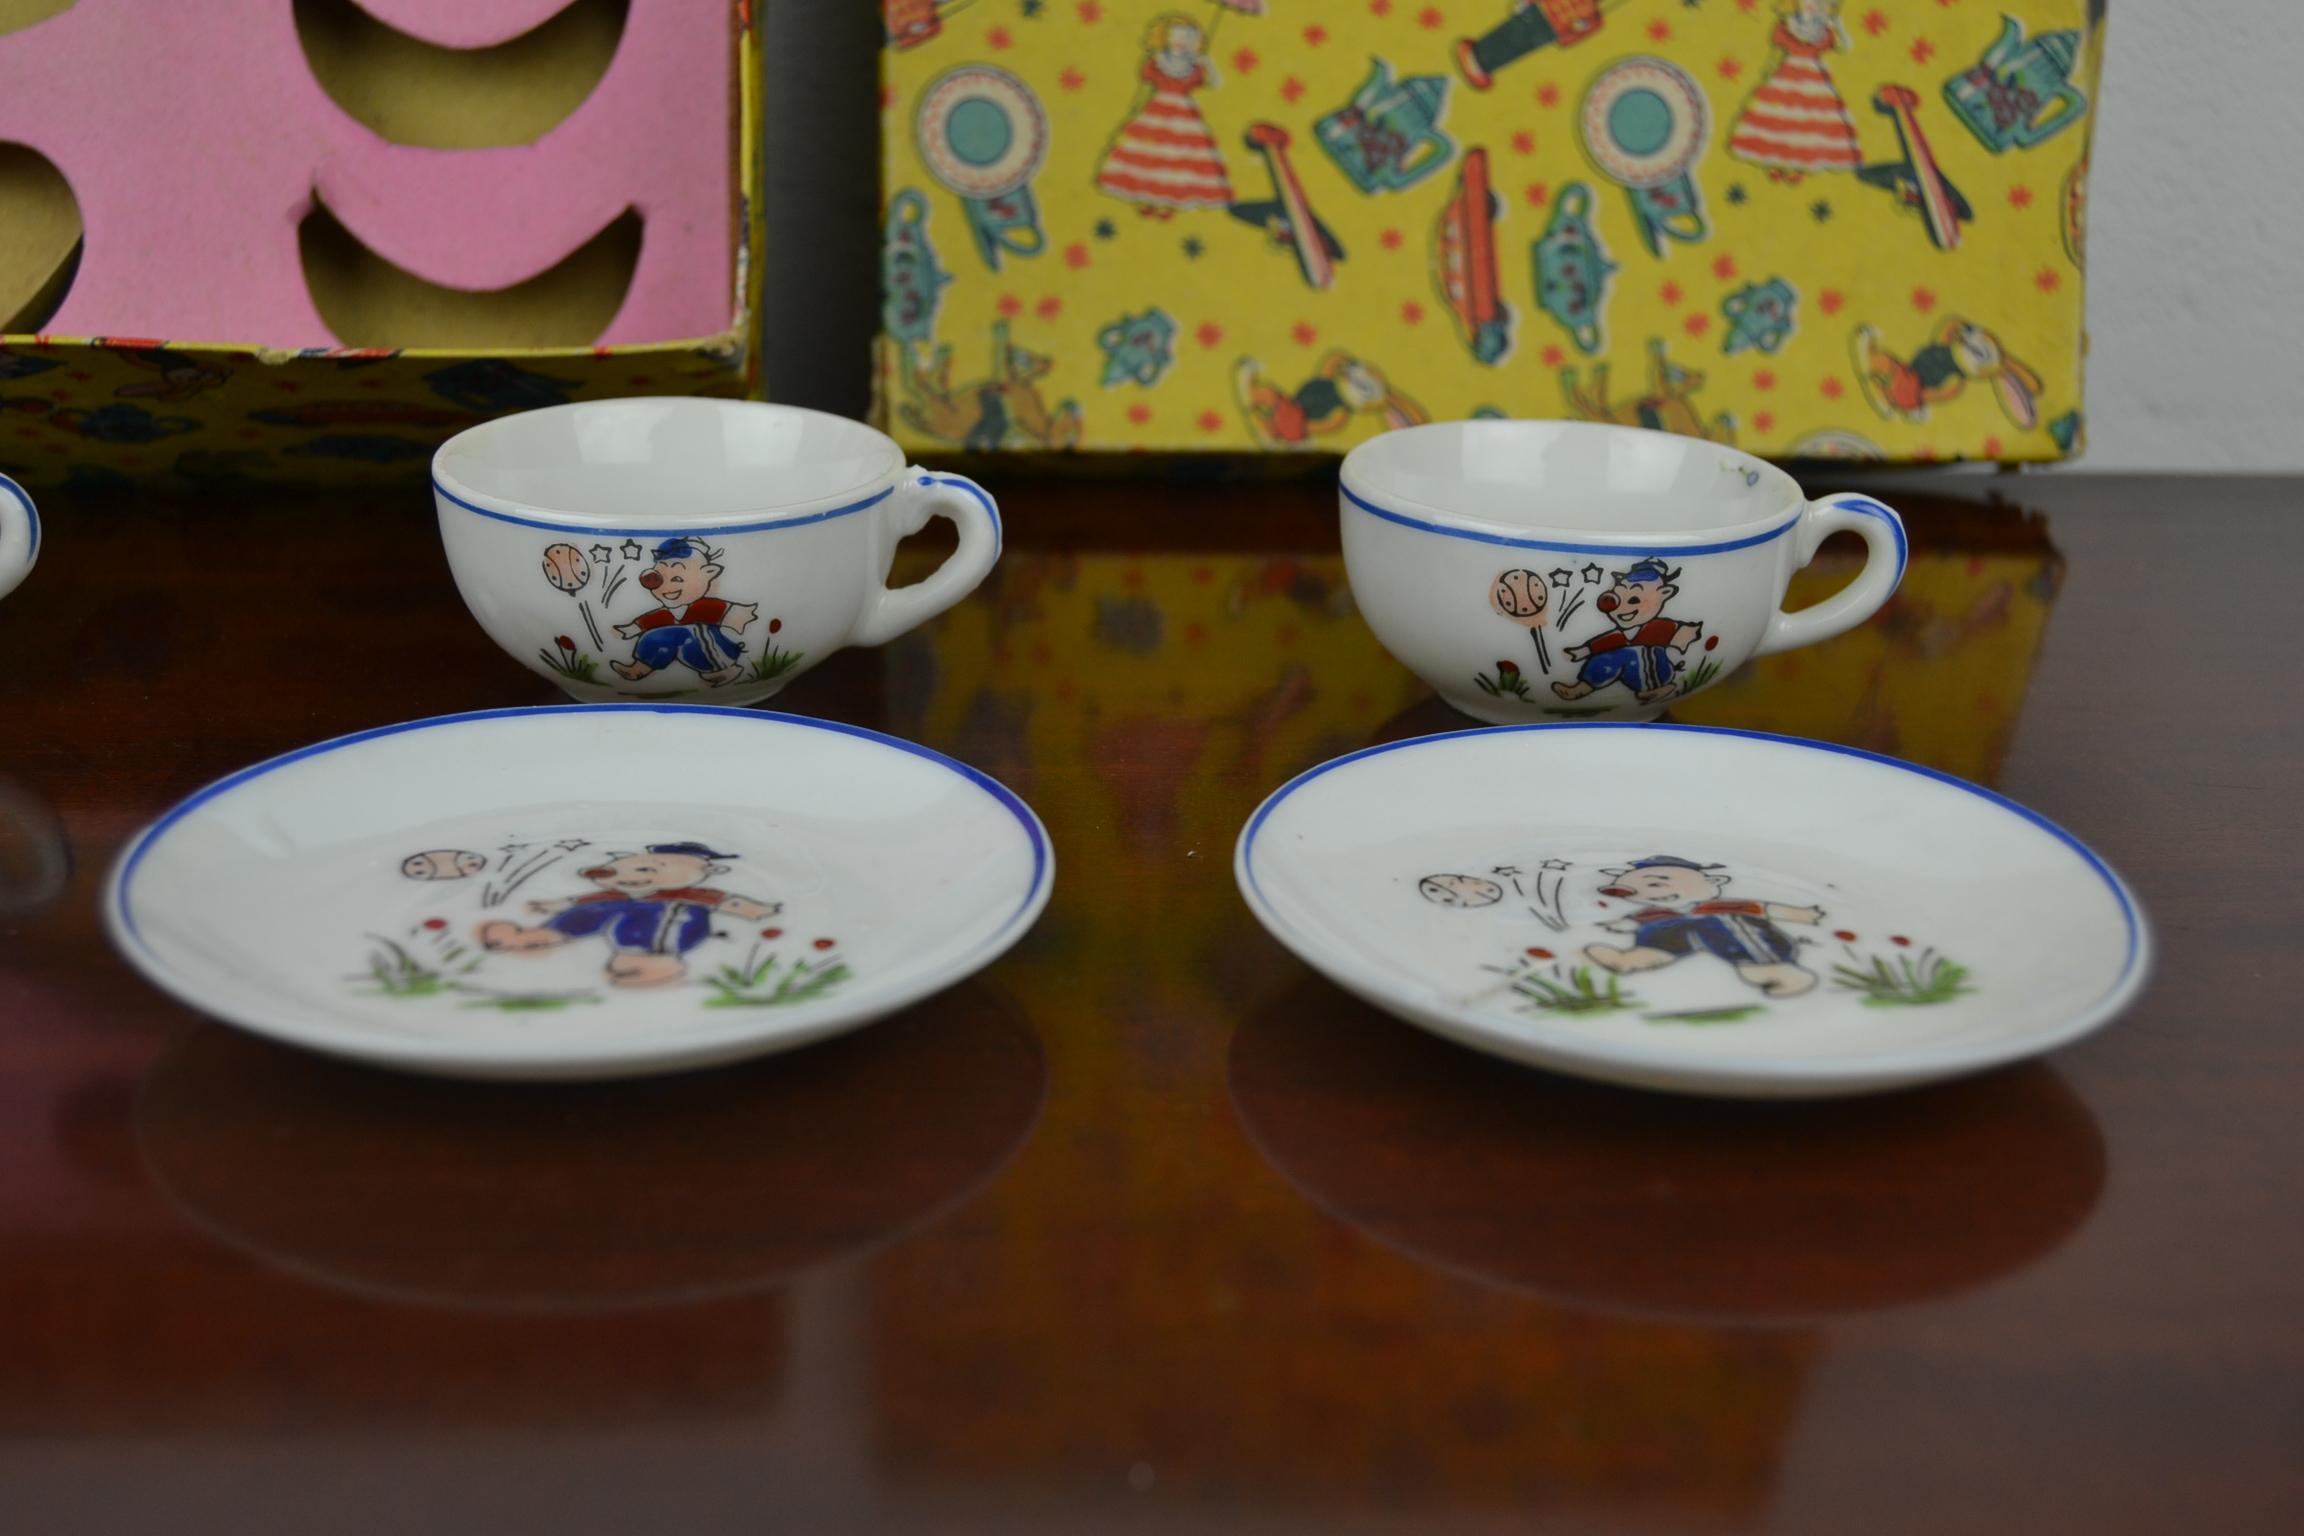 Porcelain Tea Set for Children, Pig Toy Tea Set, Foreign, Made in Japan 6